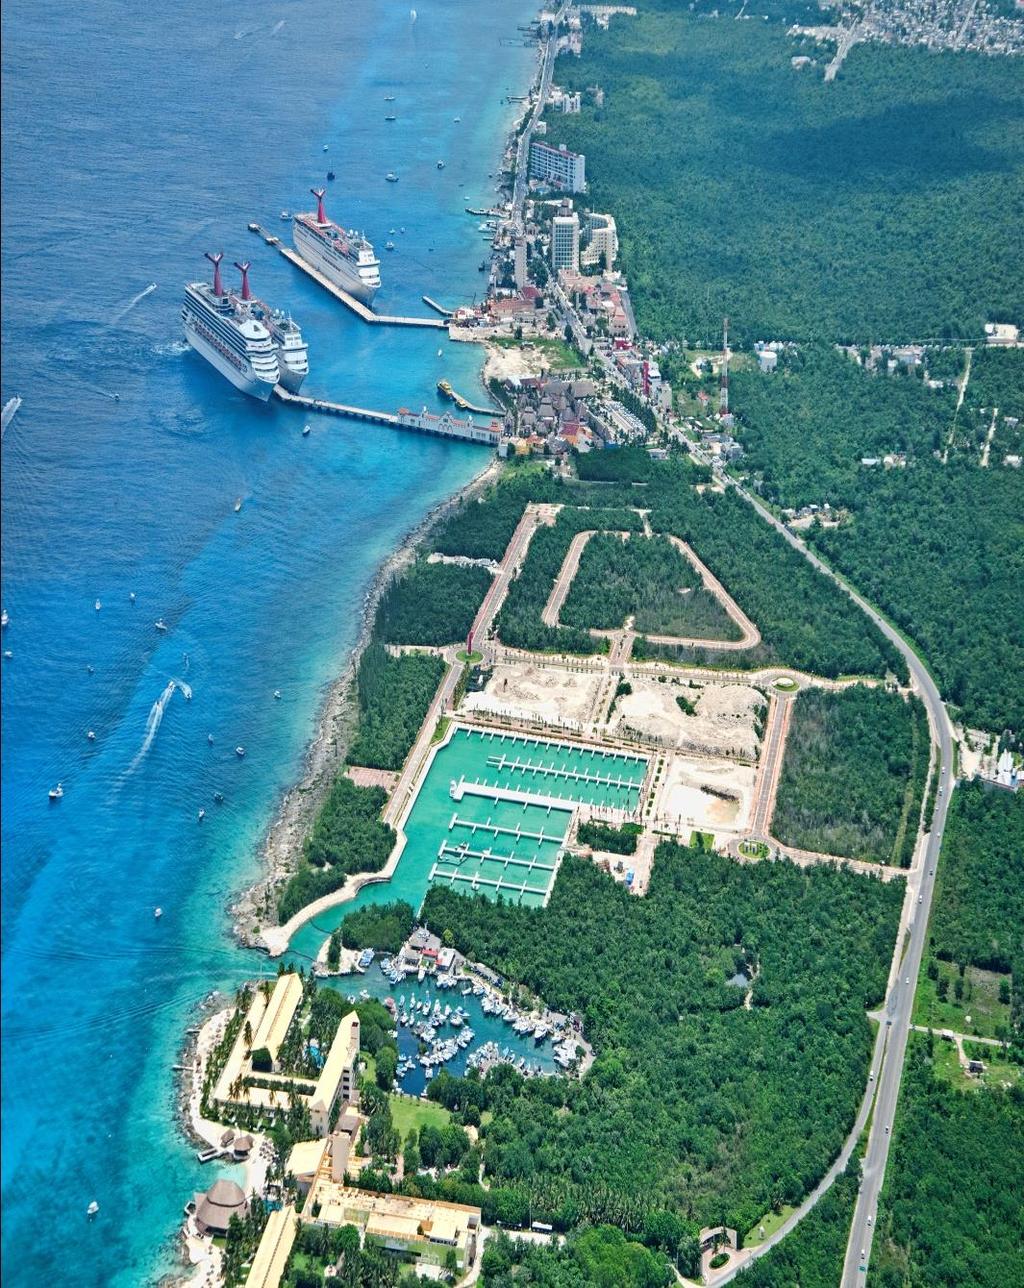 Marina Cozumel: Información General Localizado a 19 km (11.8 millas) de la costa este de Quintana Roo. A 55 km (34.3 millas) de Cancún.